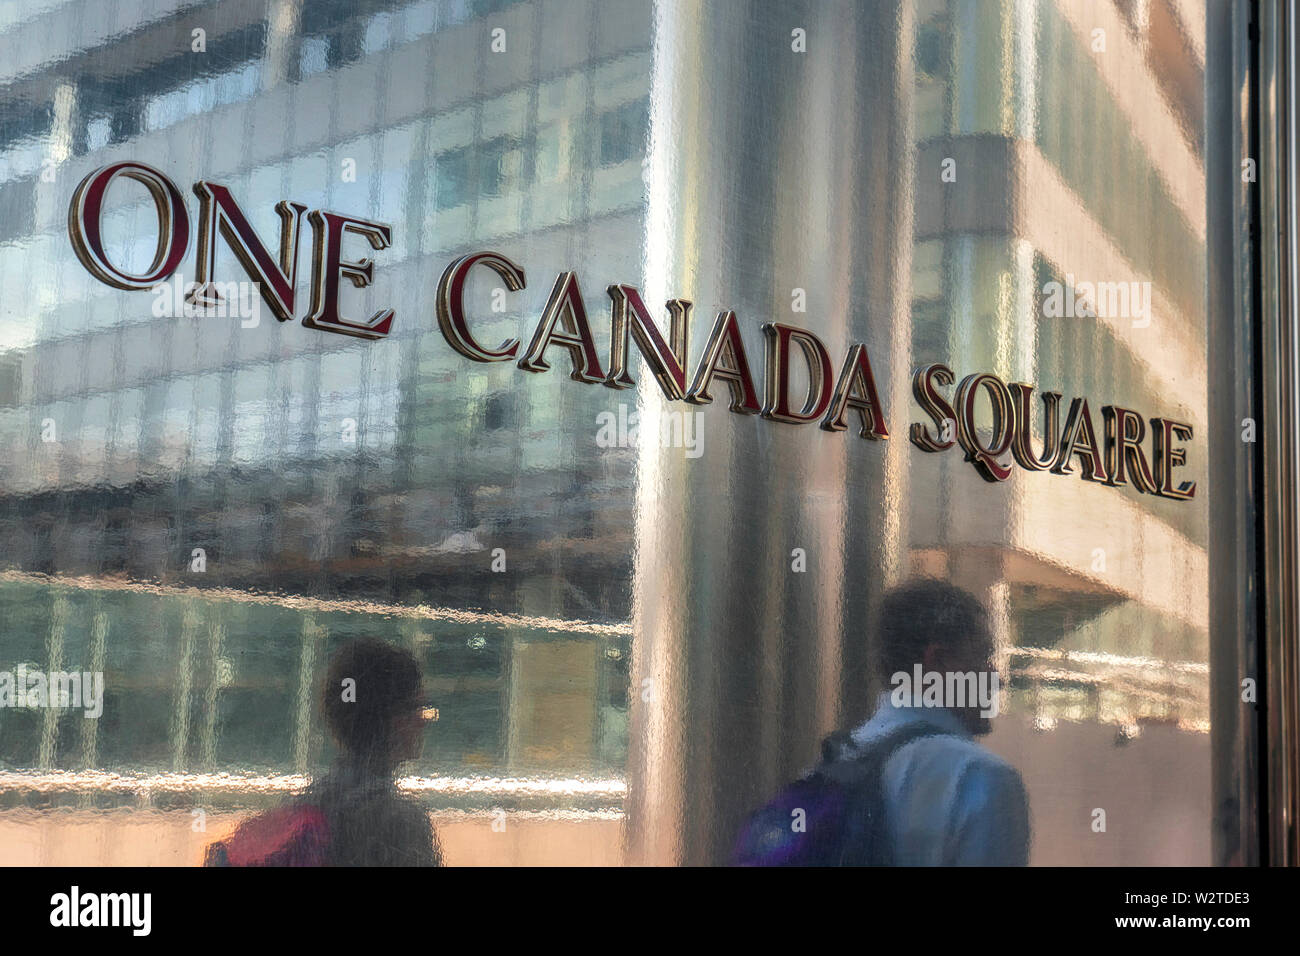 Una Plaza Canadá con placa de entrada de trabajadores a pie de la ciudad se refleja en la superficie de metal brillante fuera de la icónica torre uno Canadá Square en Canary Wharf, London E14 Foto de stock